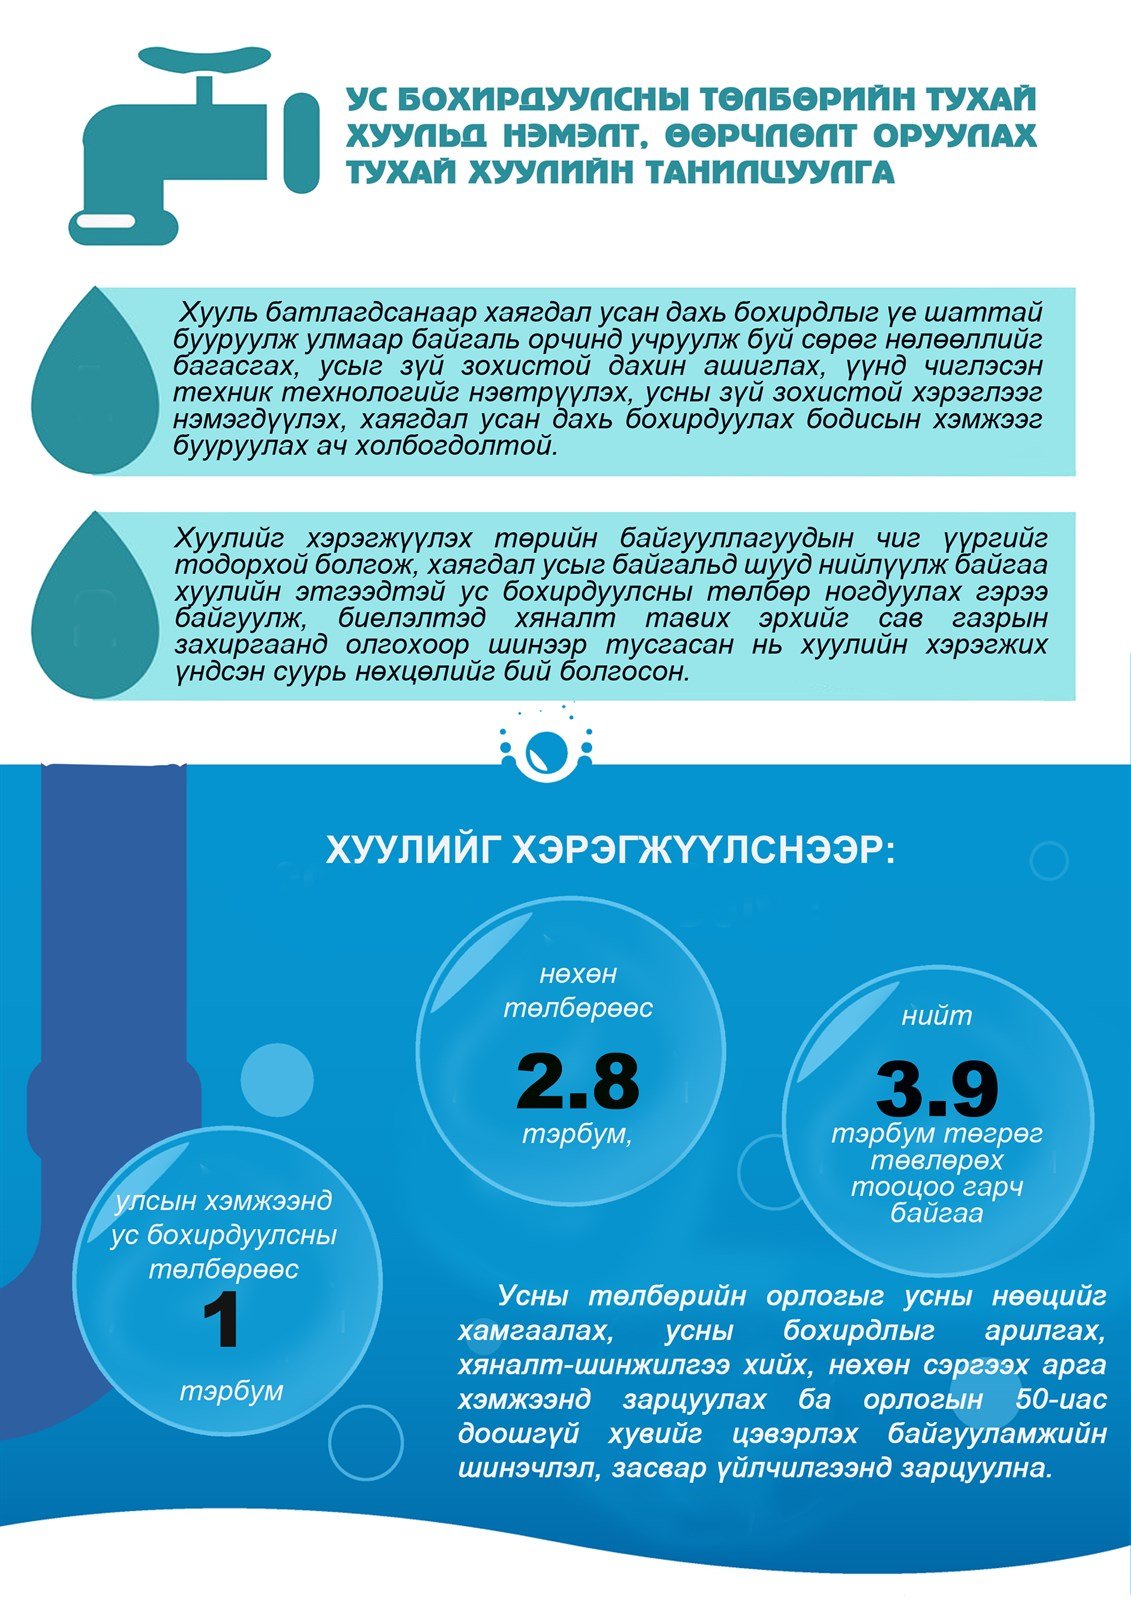 Инфографик: Ус бохирдуулсны төлбөрийн тухай хуульд нэмэлт, өөрчлөлт оруулах тухай хуулийн танилцуулга